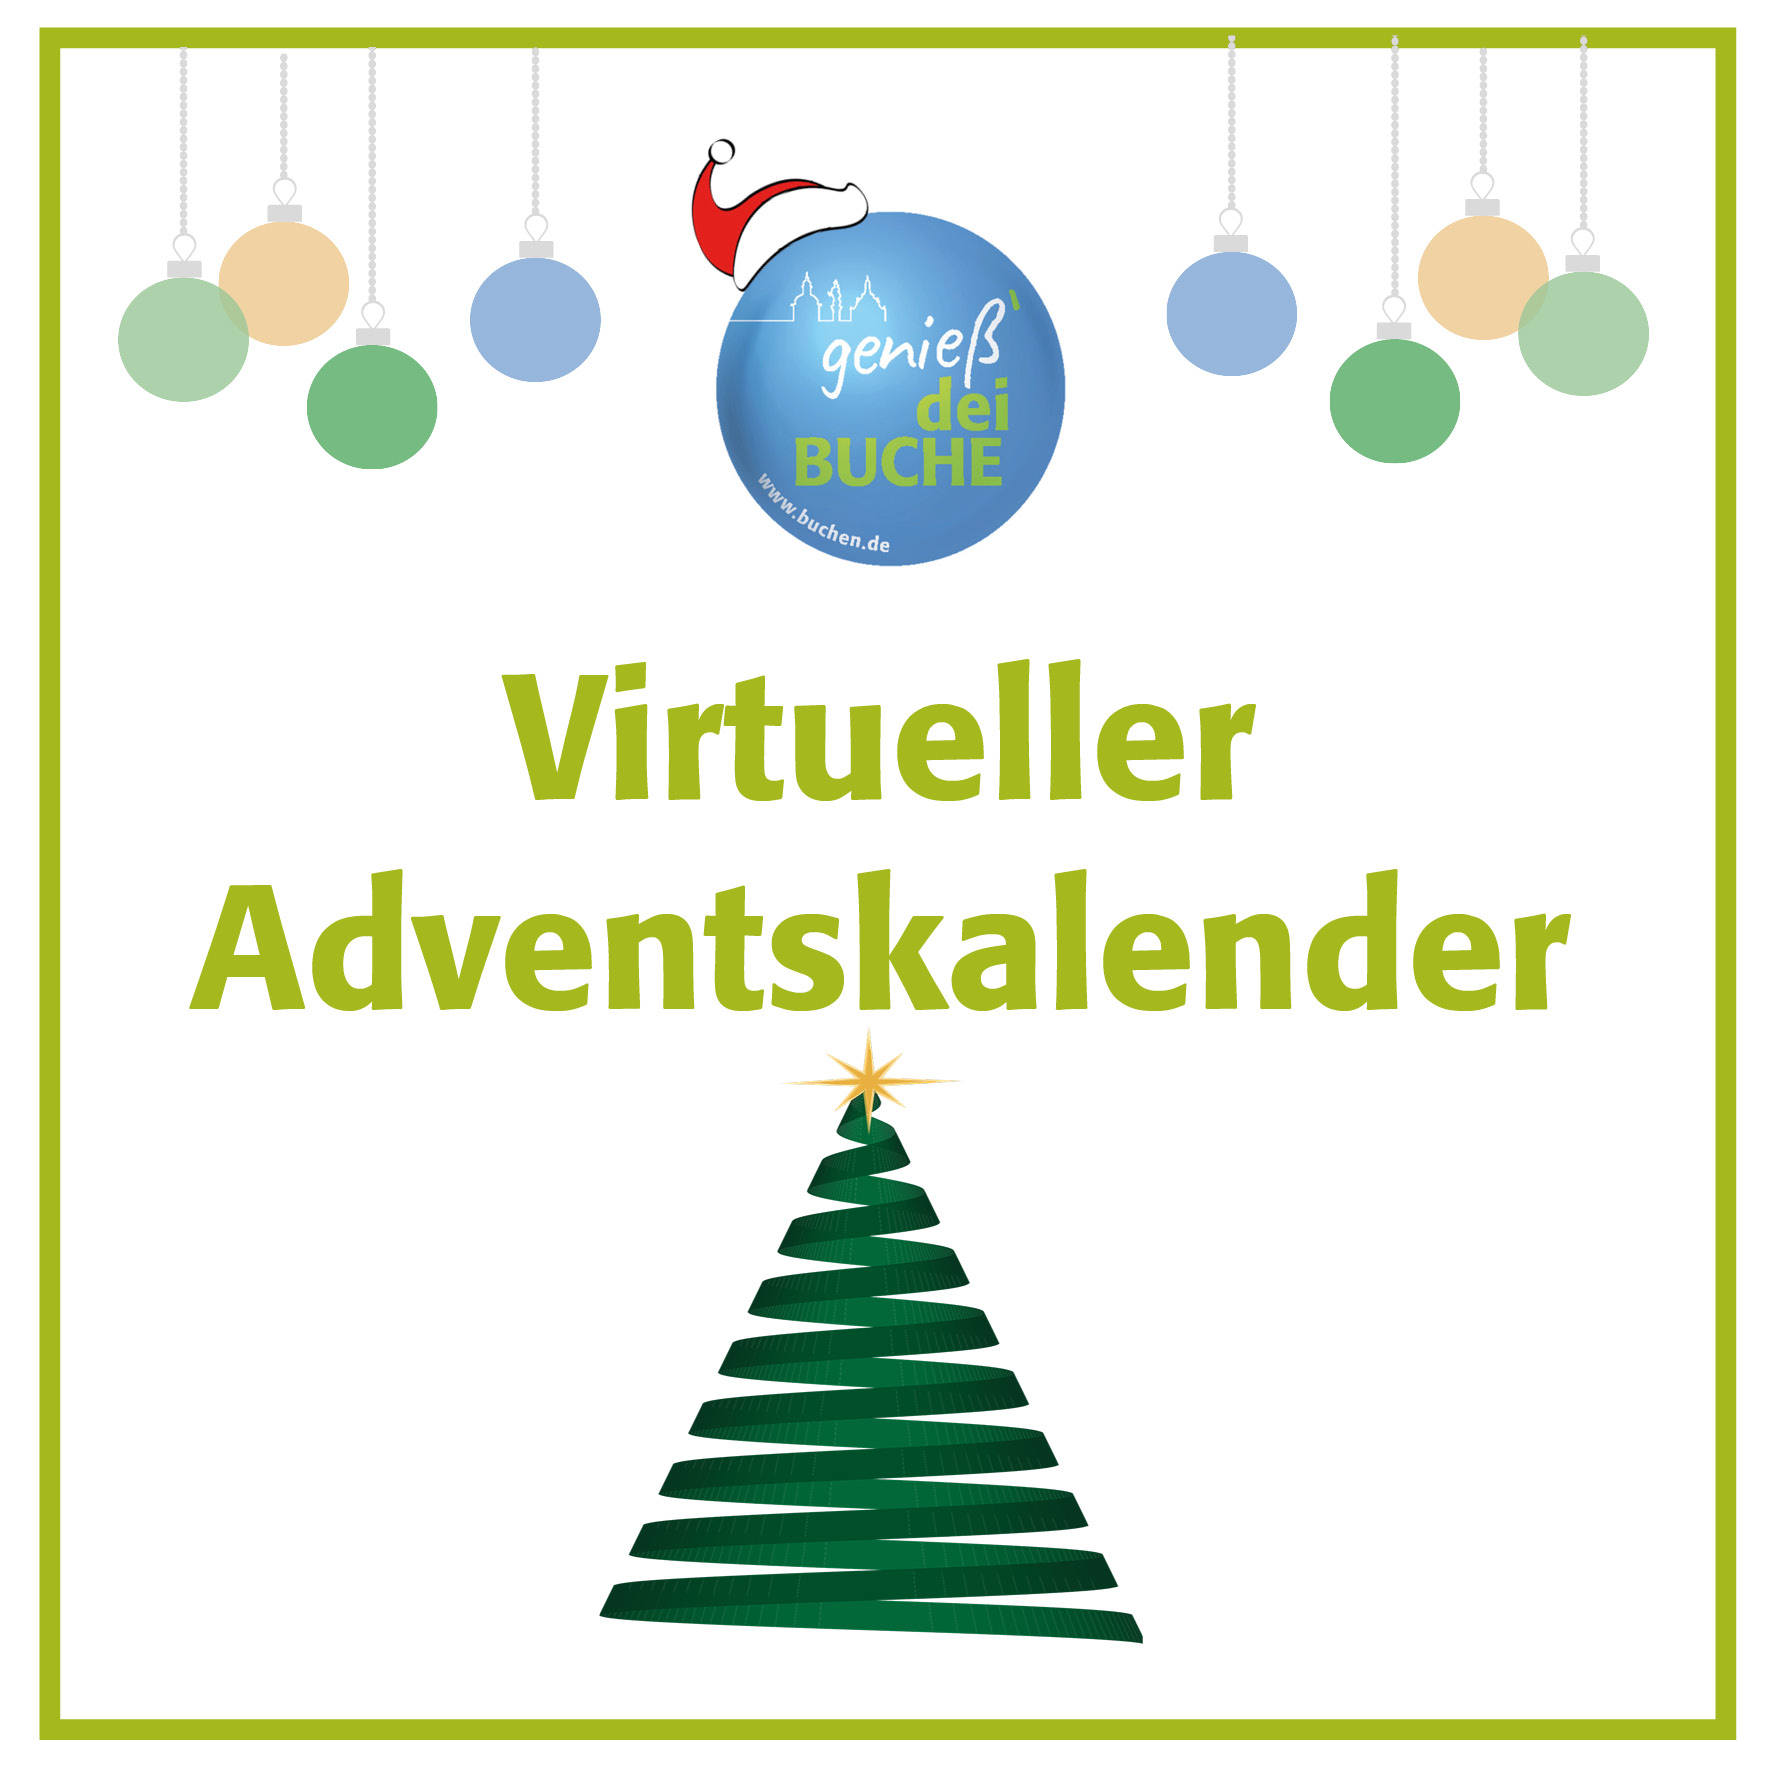 Viruteller_Adventskalender.jpg - 272,51 kB